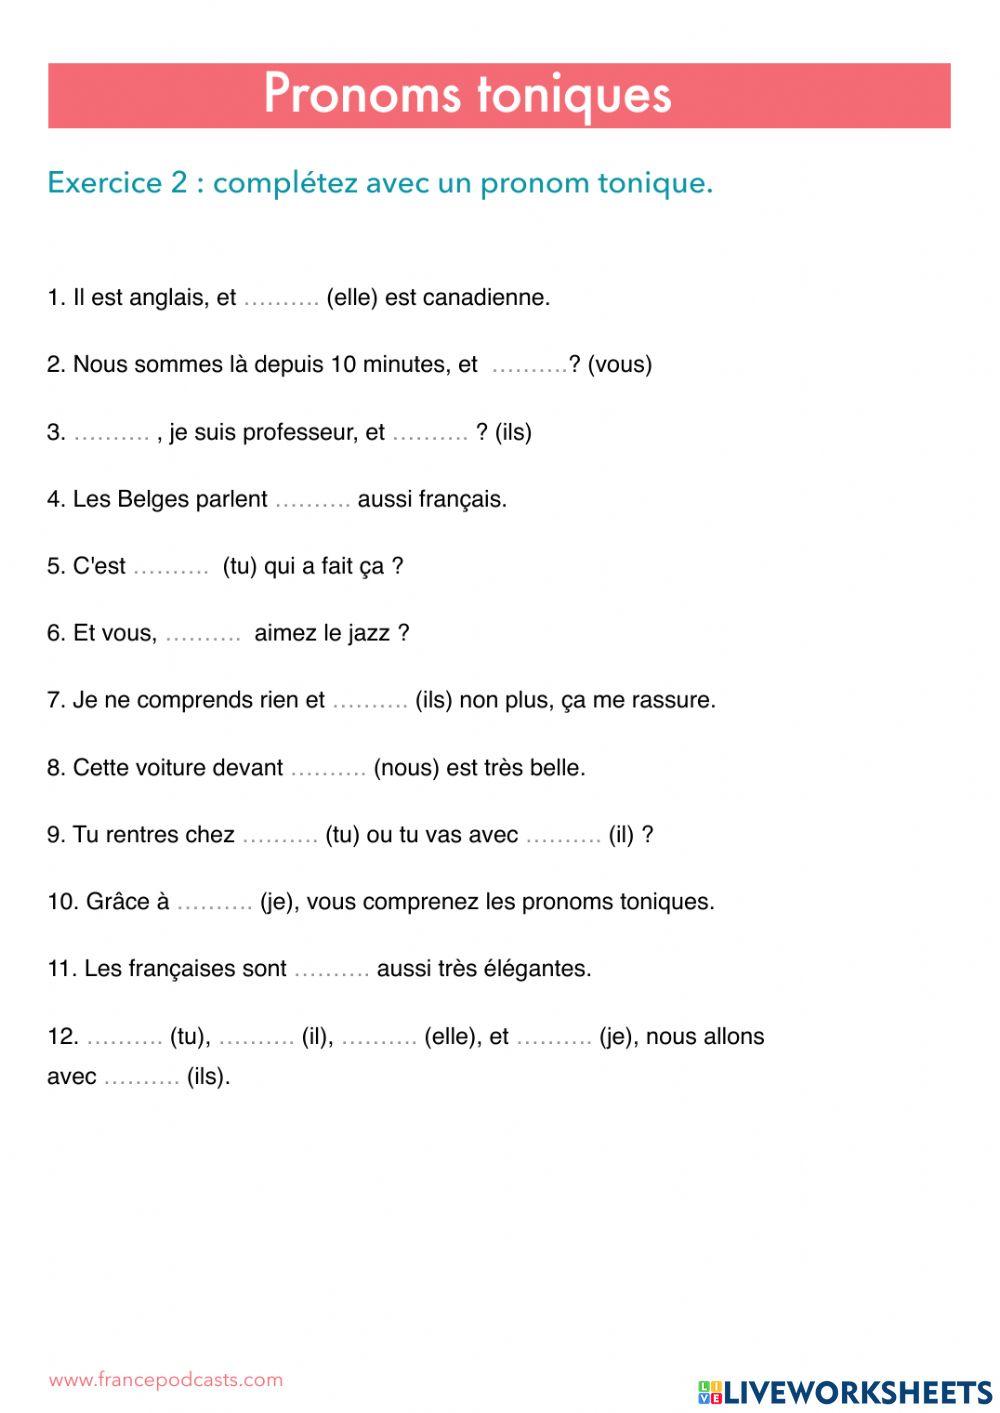 Les Pronoms Toniques interactive exercise | Live Worksheets